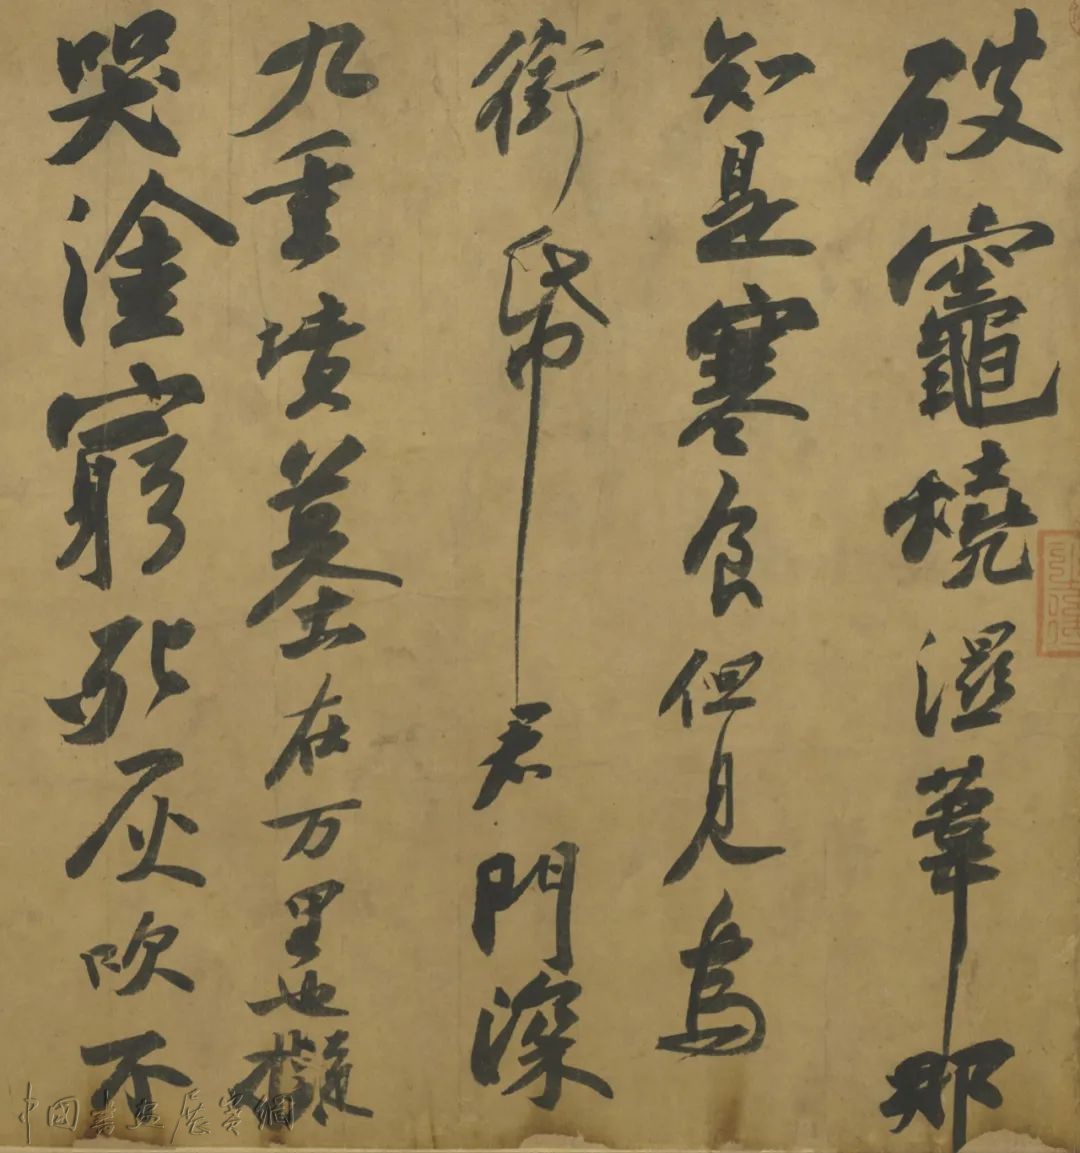 于广华丨中国书法的语图“间性”及其现象学阐释